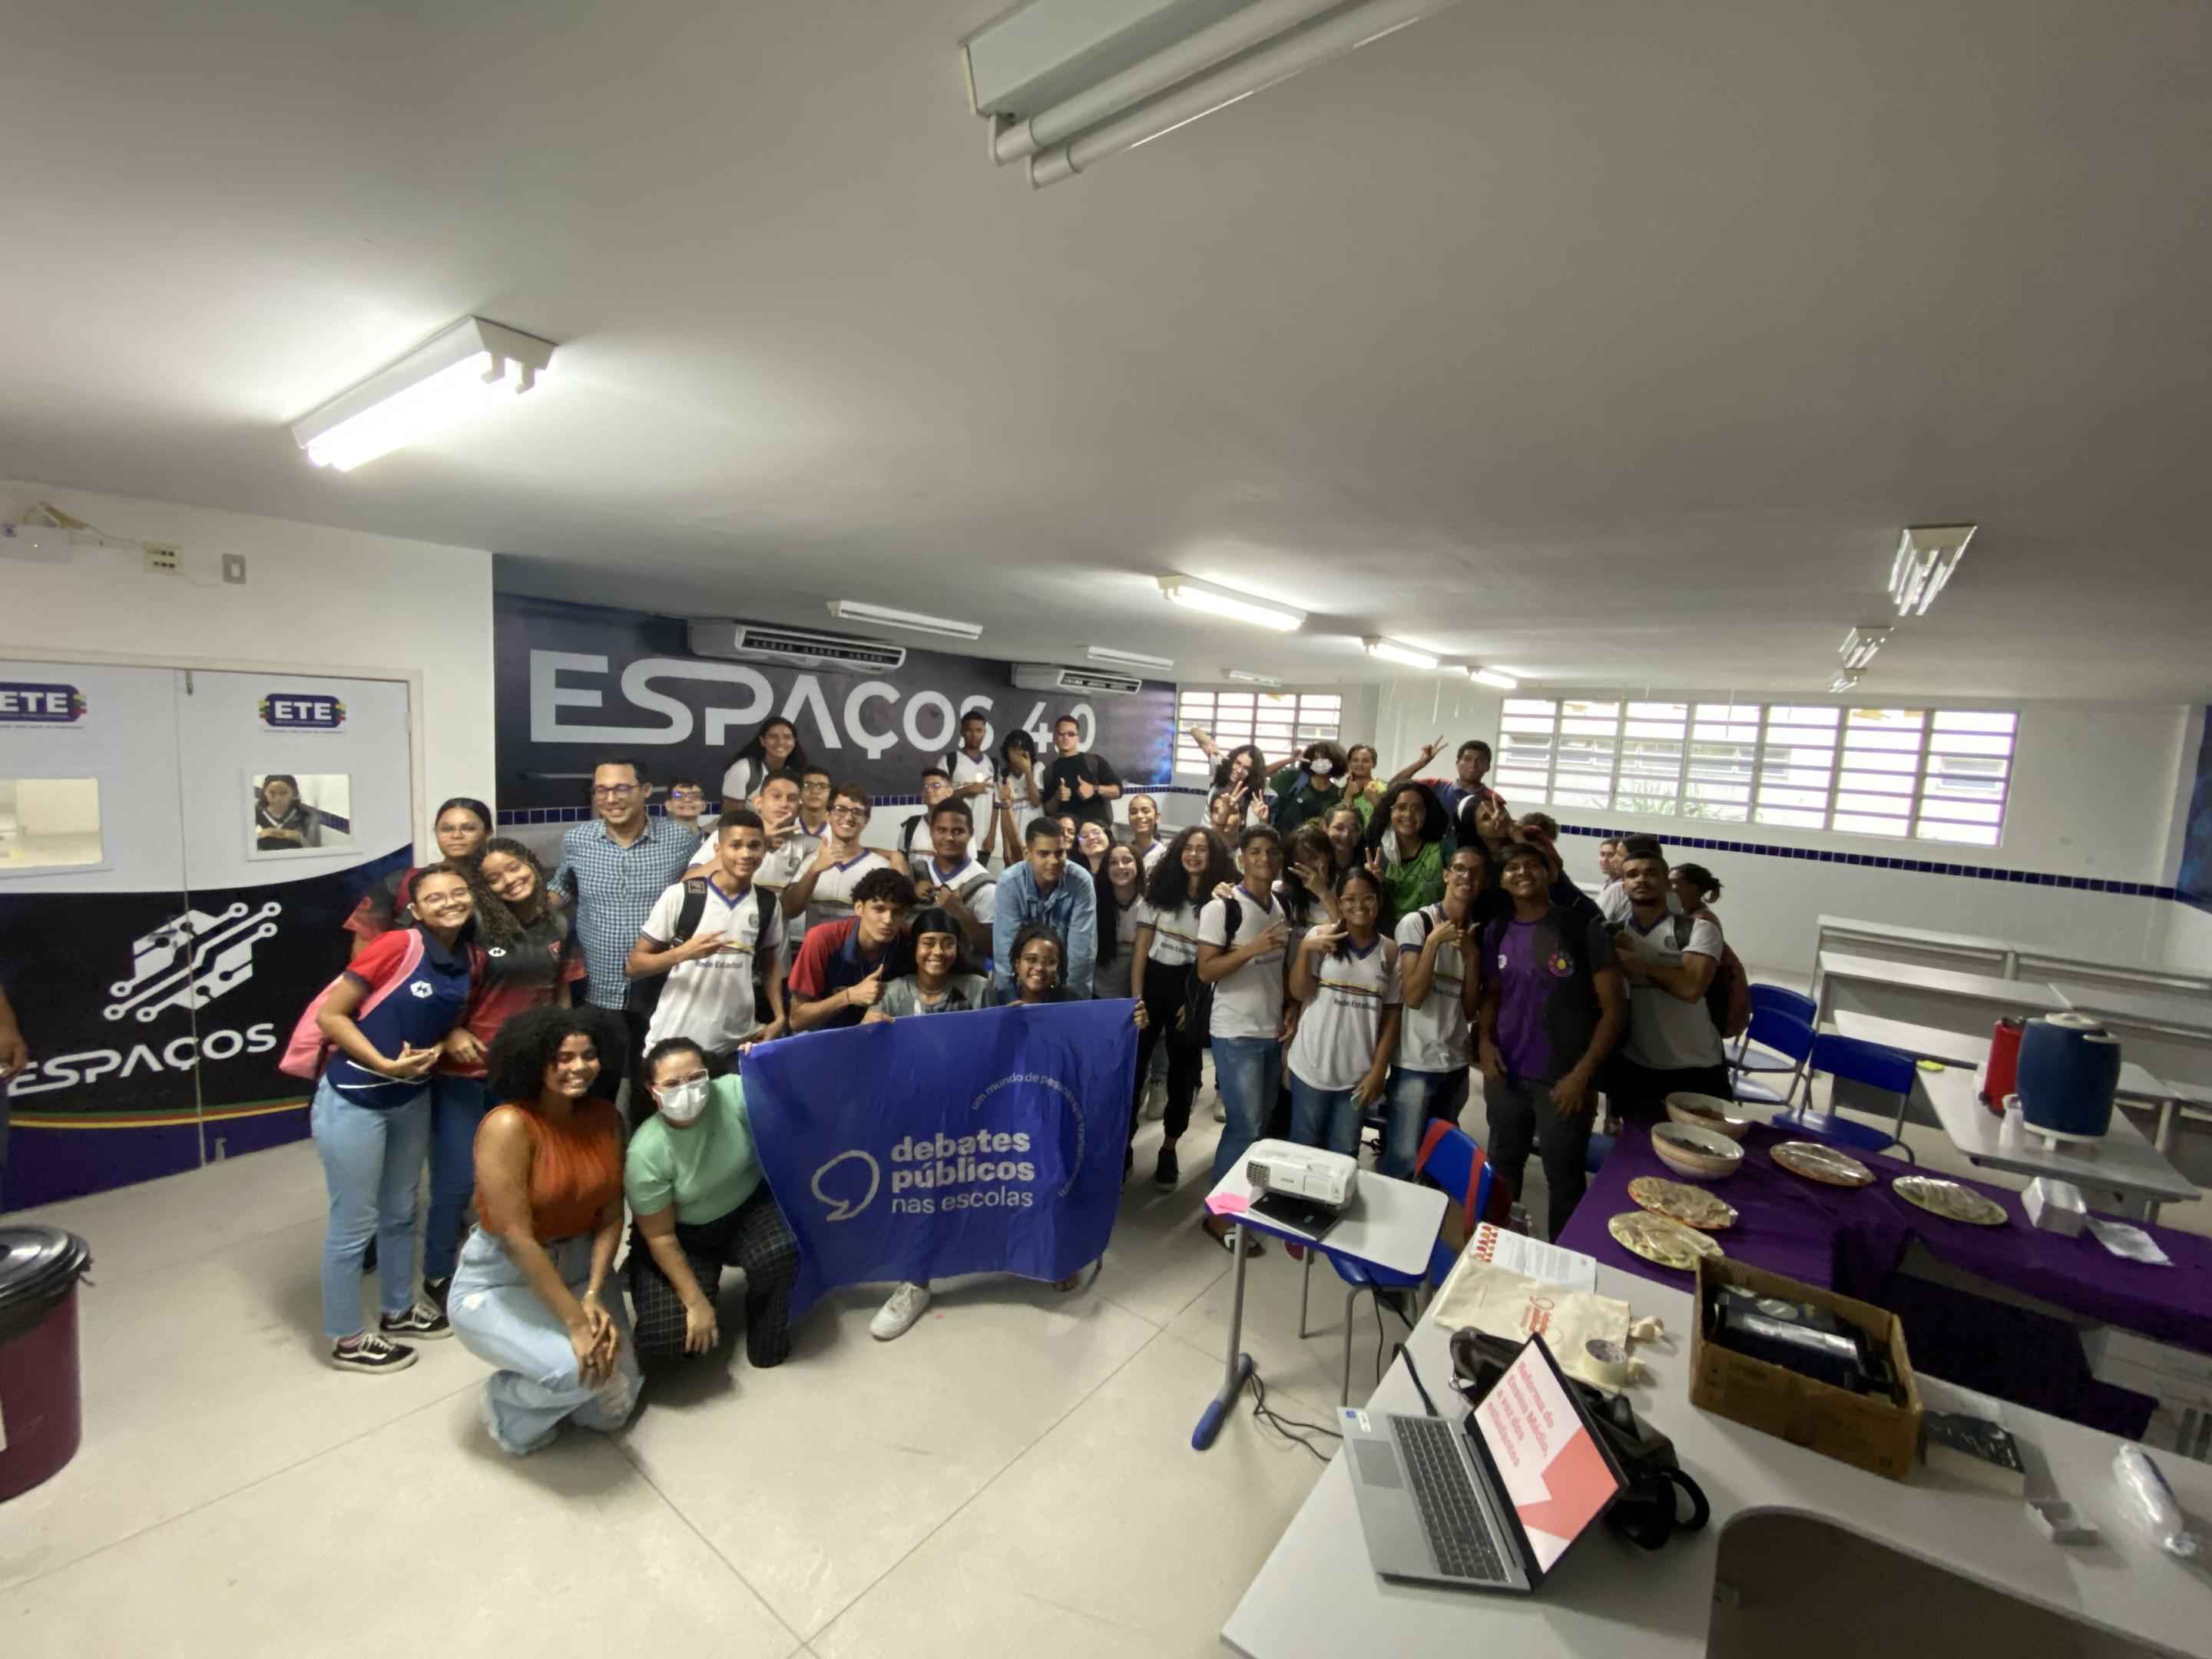 Grupo de jovens reunidos em uma sala de aula. A turma sorri para a foto e segura uma bandeira dos Debates Públicos nas Esocolas